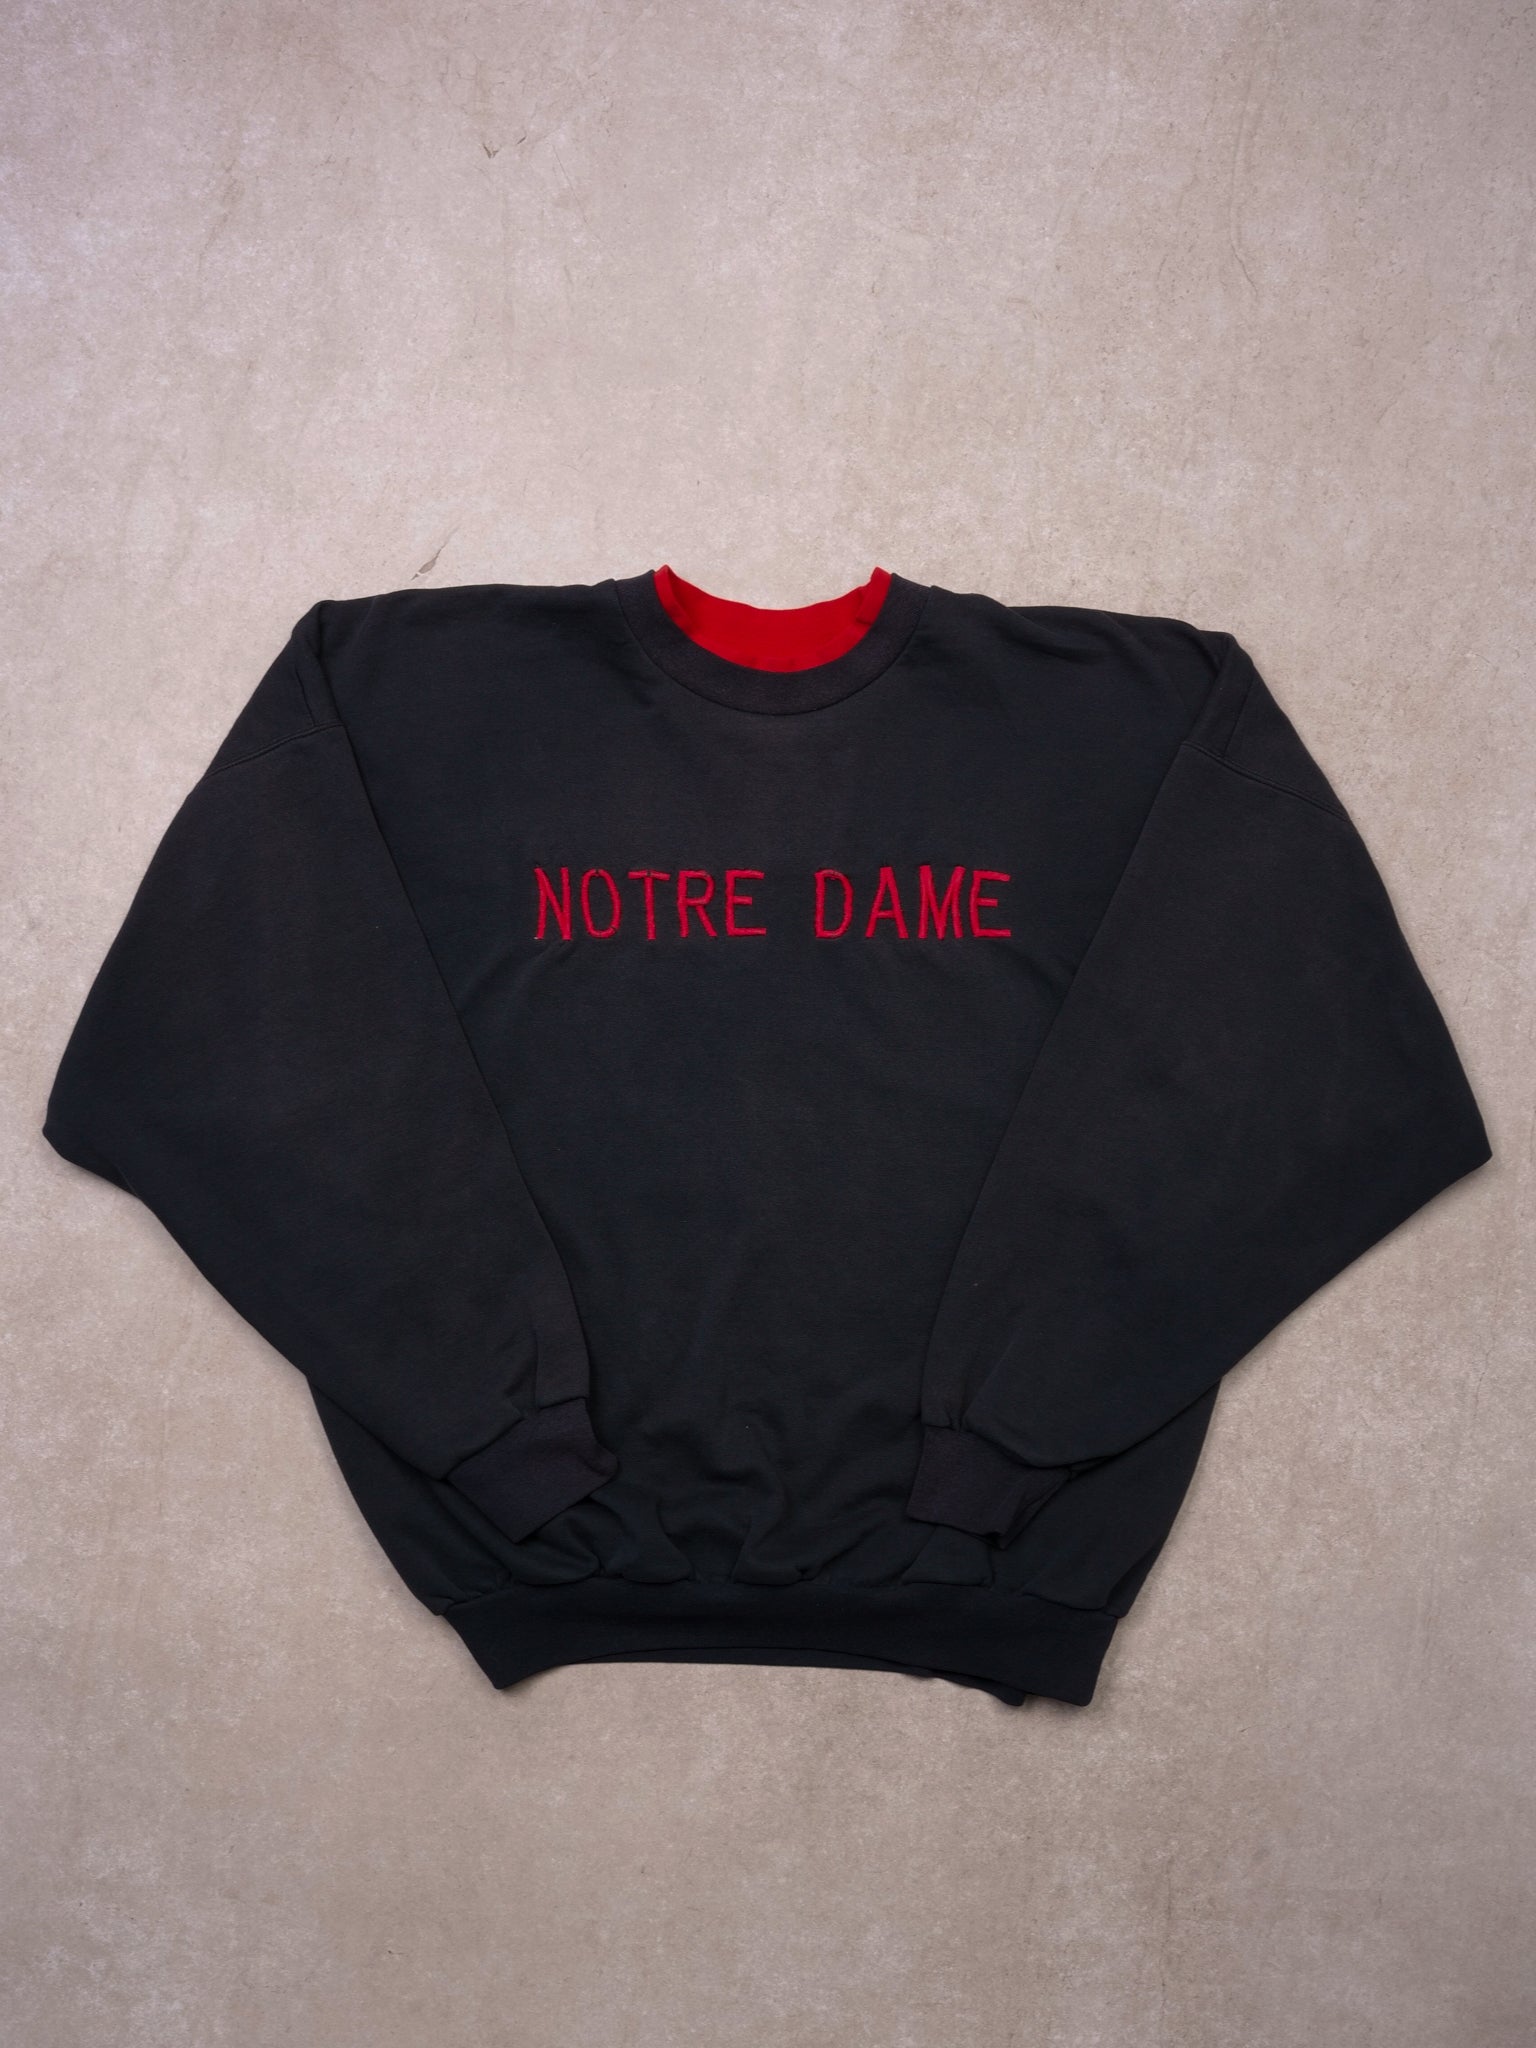 Vintage 90s Black & Red Notre Dame Crewneck (L)